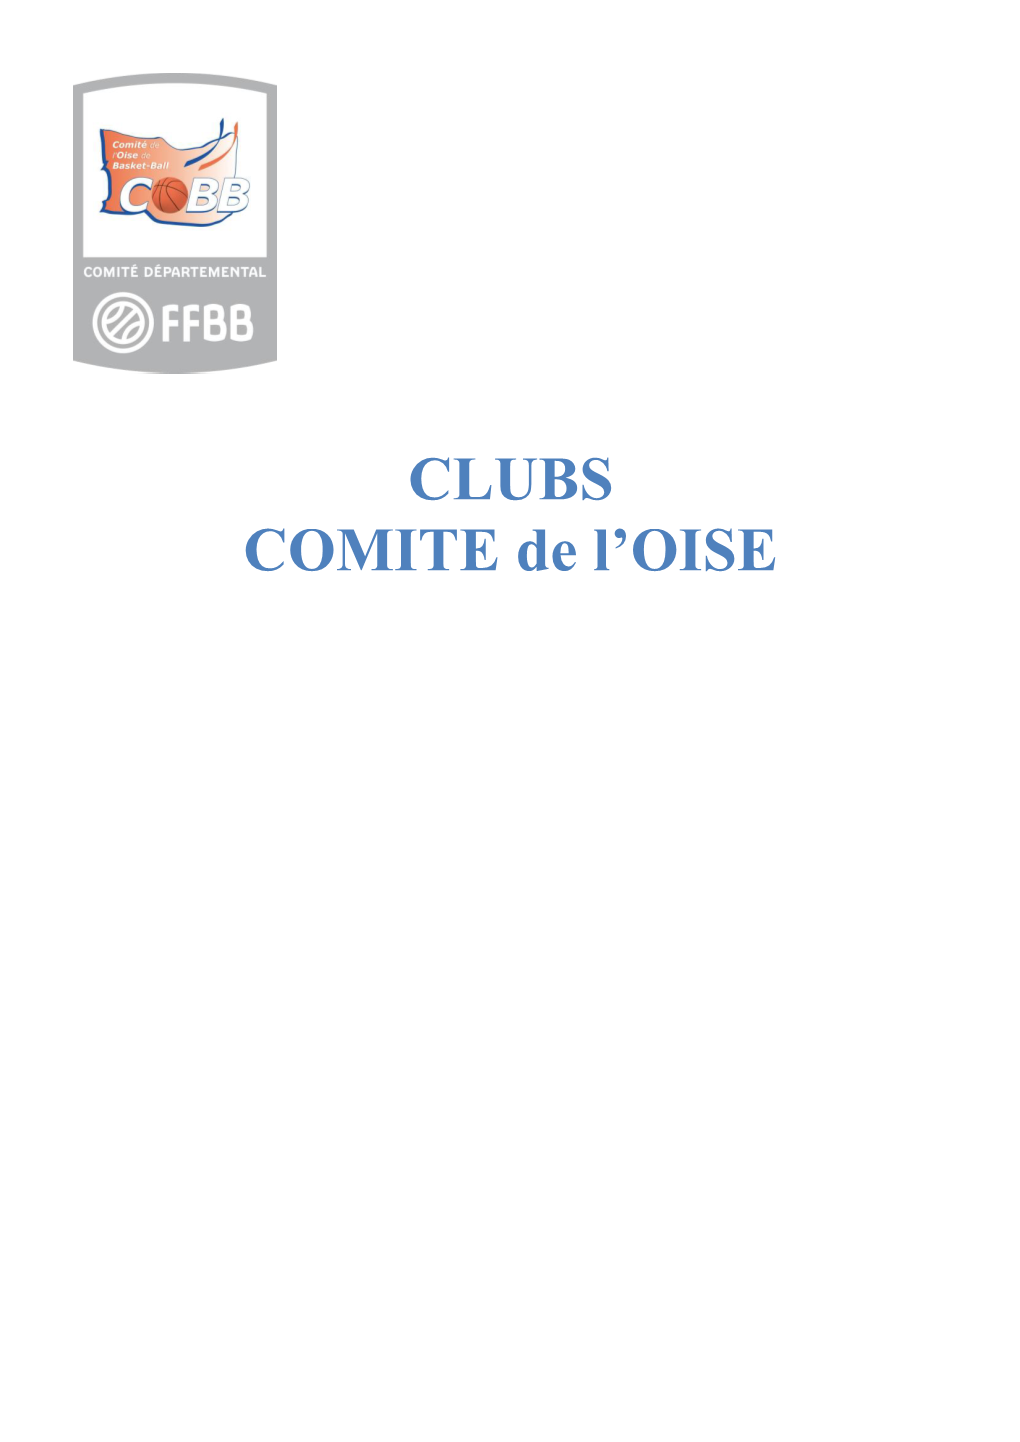 CLUBS COMITE De L'oise